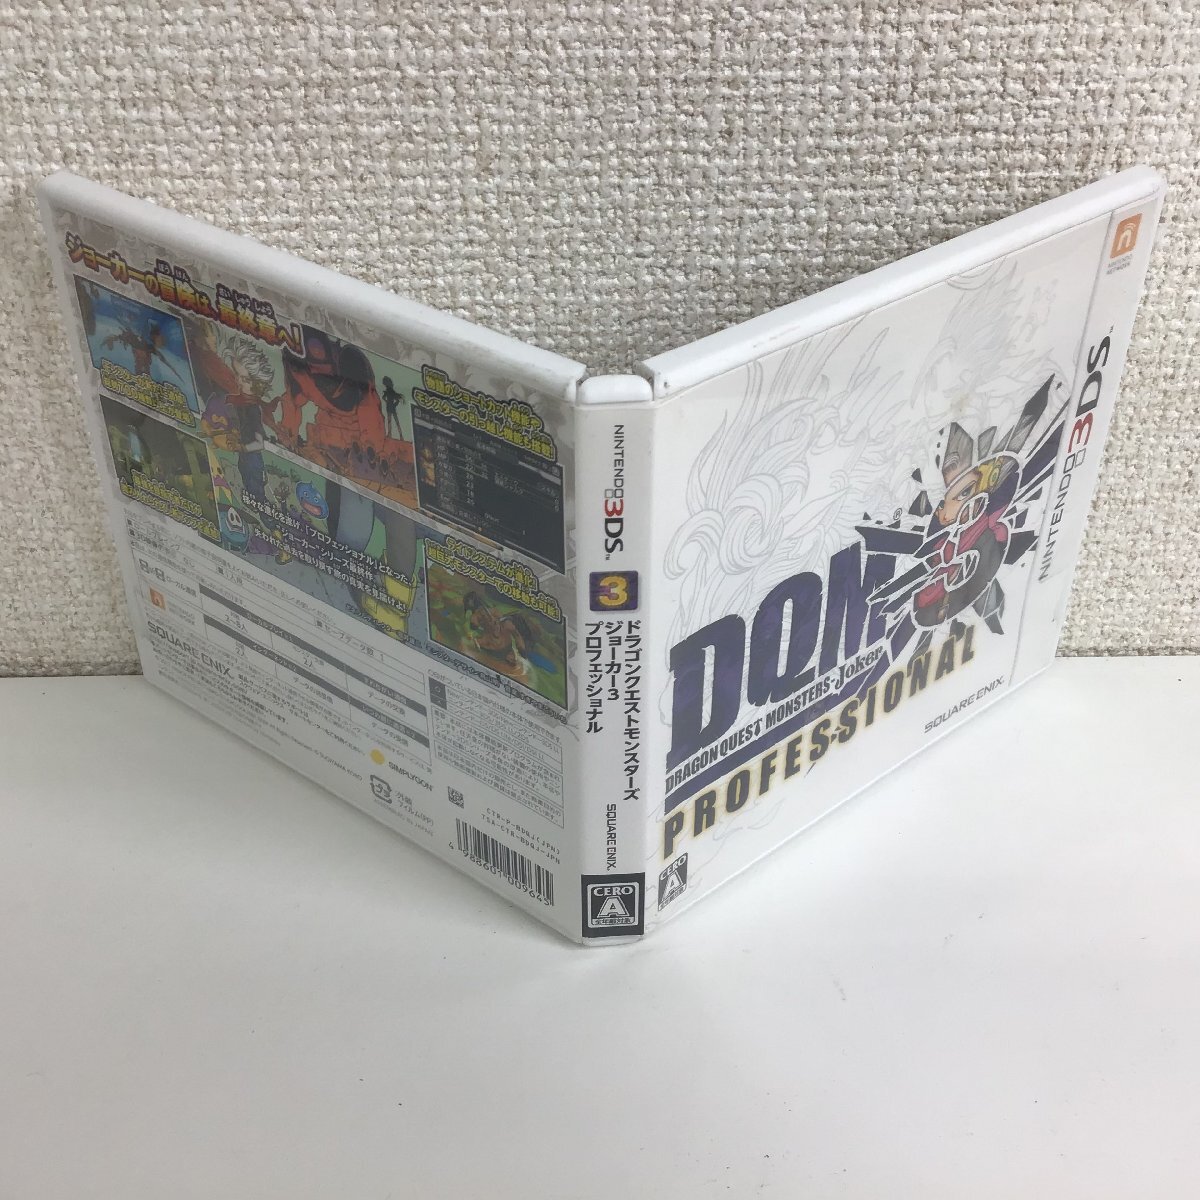 【3DSソフト】ドラゴンクエストモンスターズ ジョーカー3 プロフェッショナル SQUARE ENIX ドラクエ○_画像3